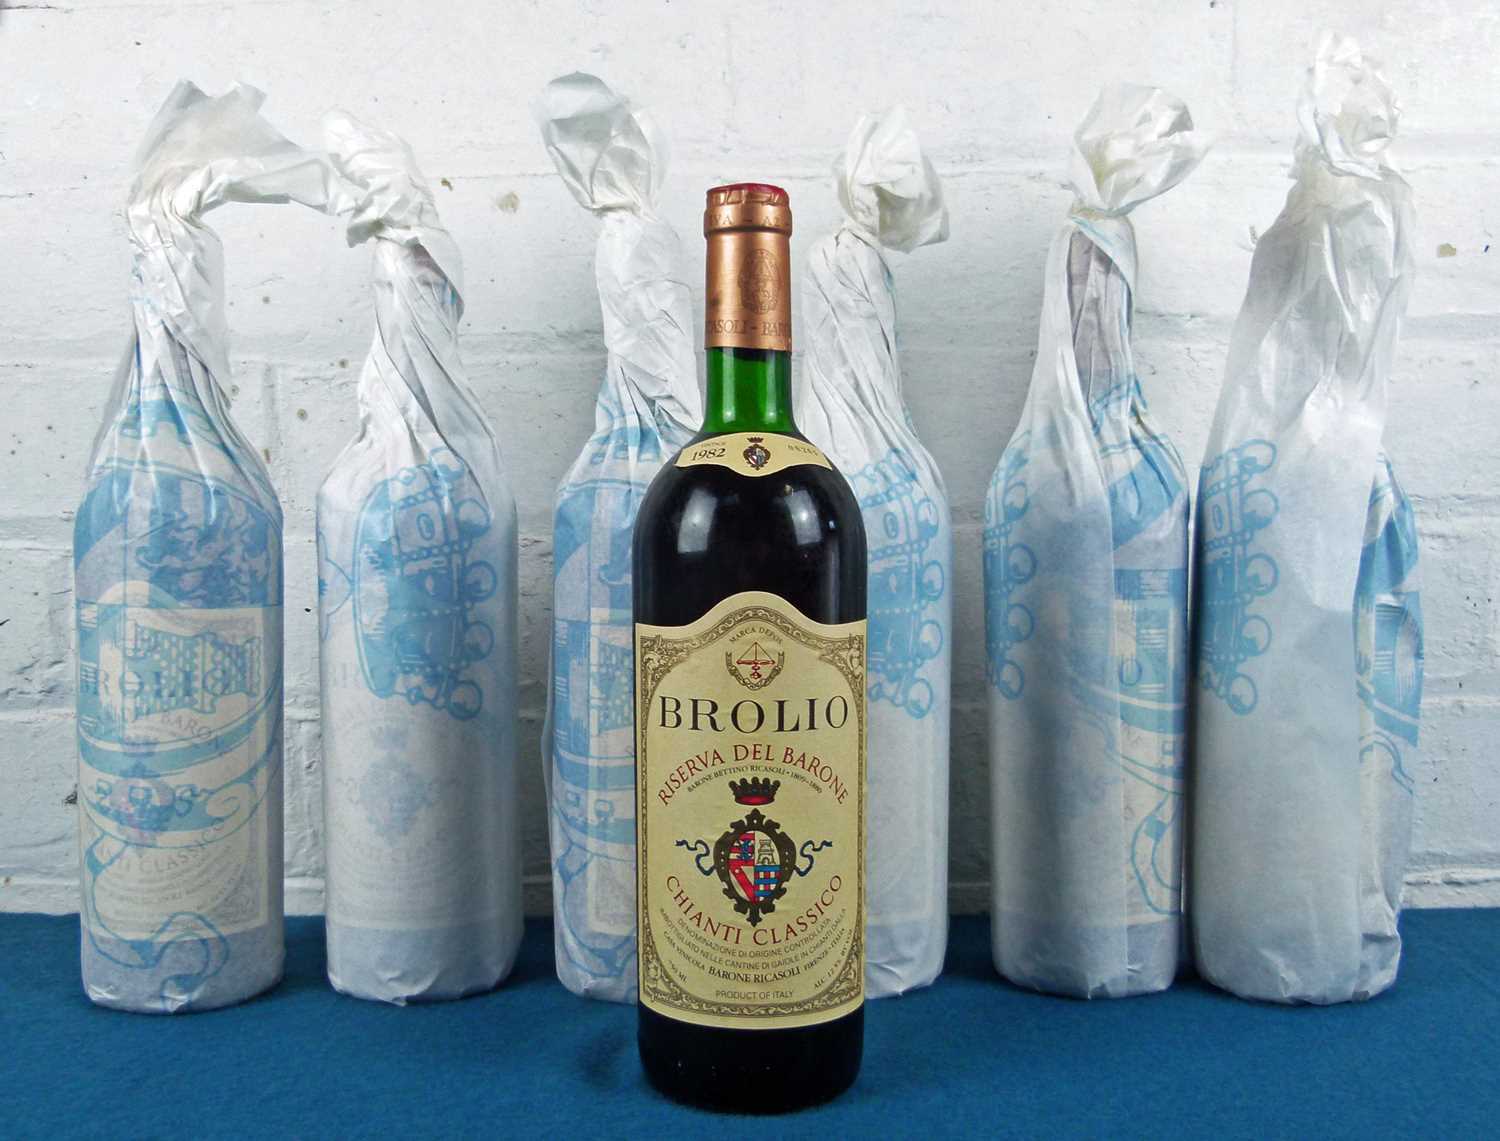 7 bottles Chianti Classico Riserva Brolio Barone di Ricasoli ‘Riserva del Barone’ 1982